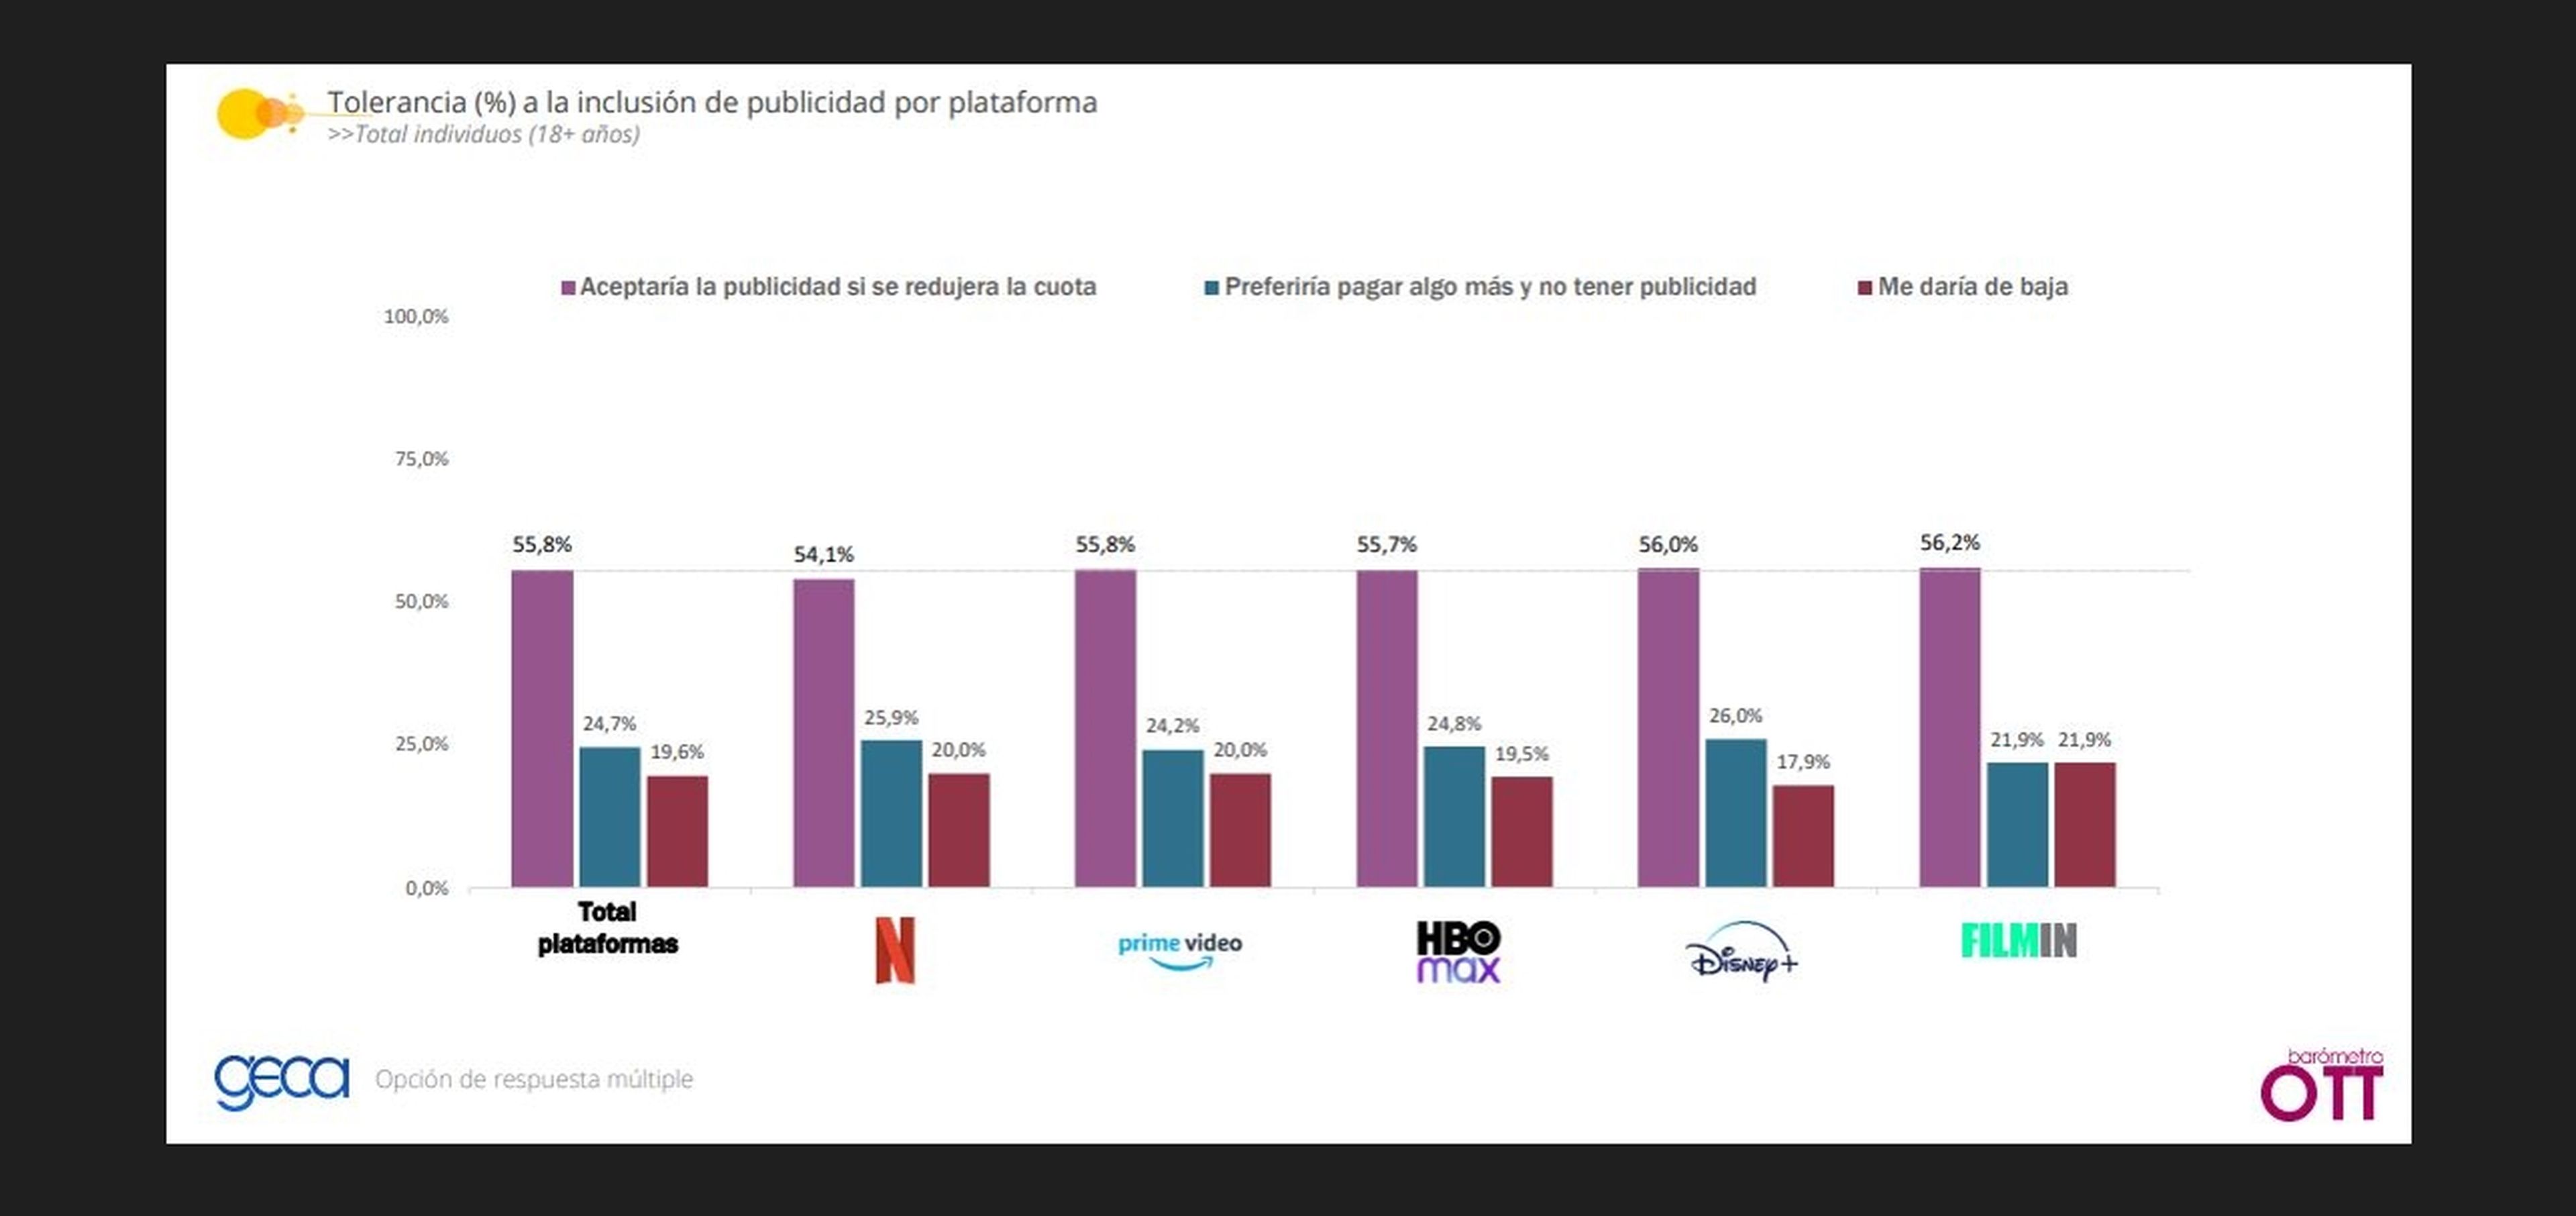 Tolerancia a la inclusión de publicidad en cada plataforma.  Fuente: Barómetro GECA OTT